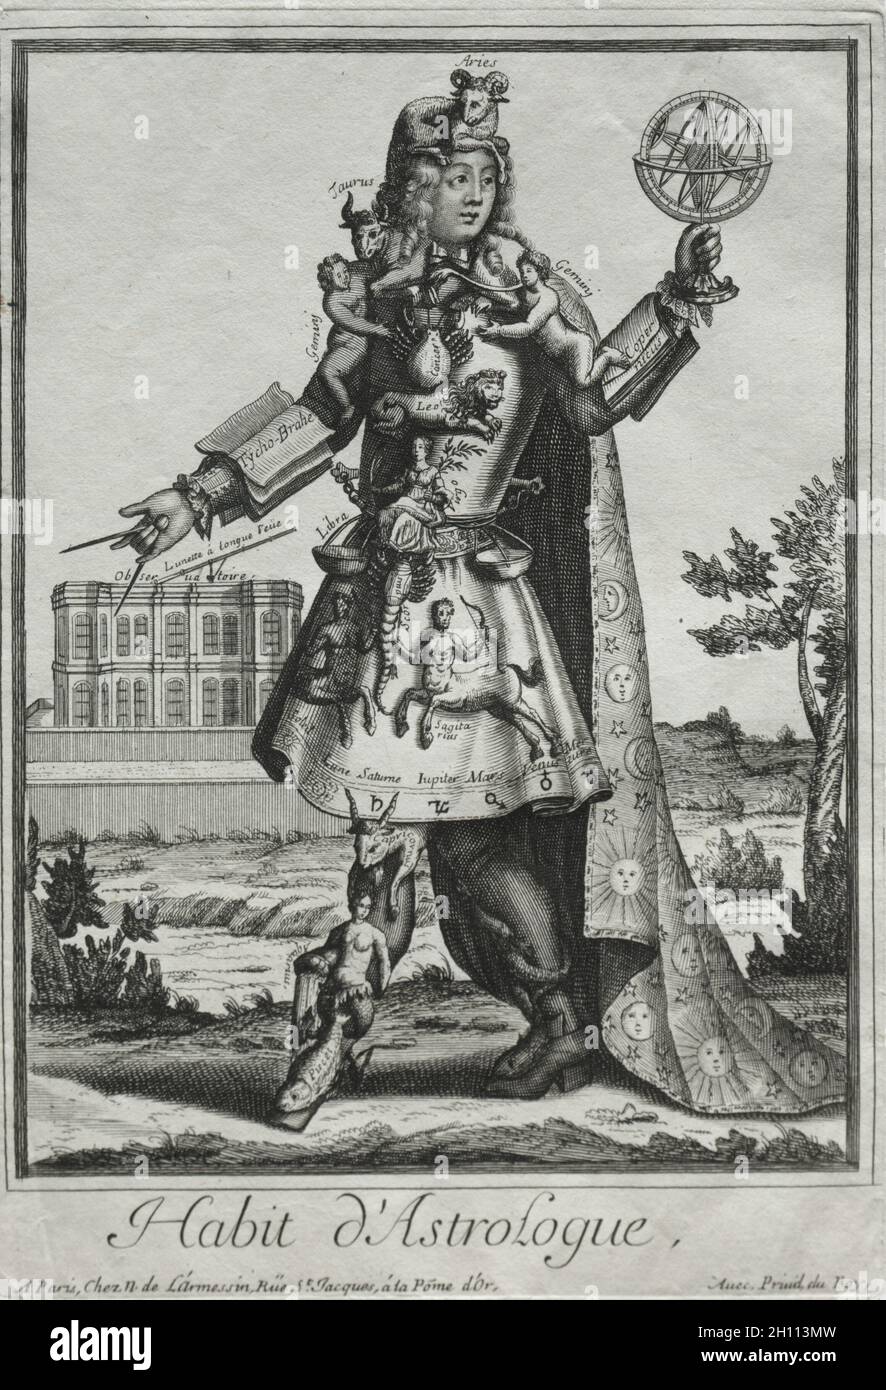 Costumes fantaisie : costume de l'astrologue, c.1690. Nicolas de Larmessin II (français, 1638-1694).Gravure et gravure; feuille: 31.7 x 21.6 cm (12 1/2 x 8 1/2 in.); repère plateau: 28.7 x 19.7 cm (11 5/16 x 7 3/4 in.). Banque D'Images